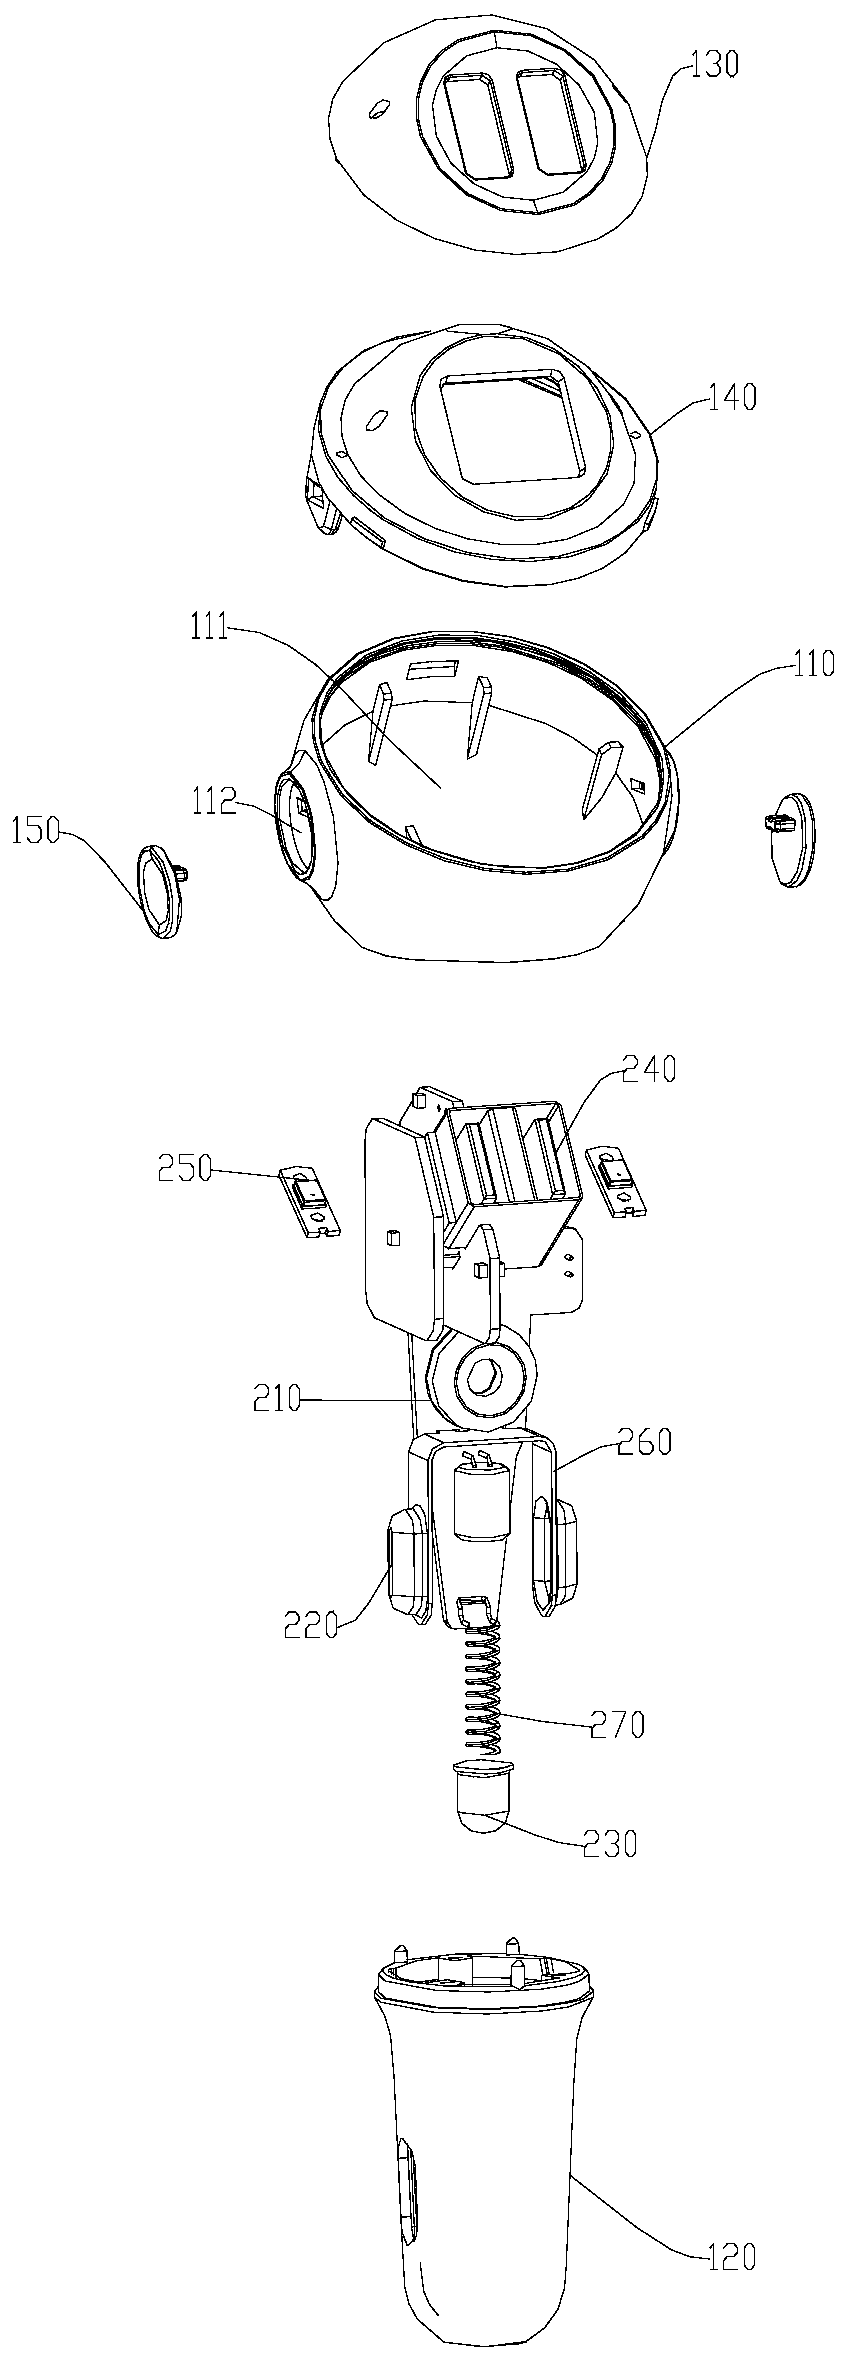 Vehicle-mounted robot and vehicle